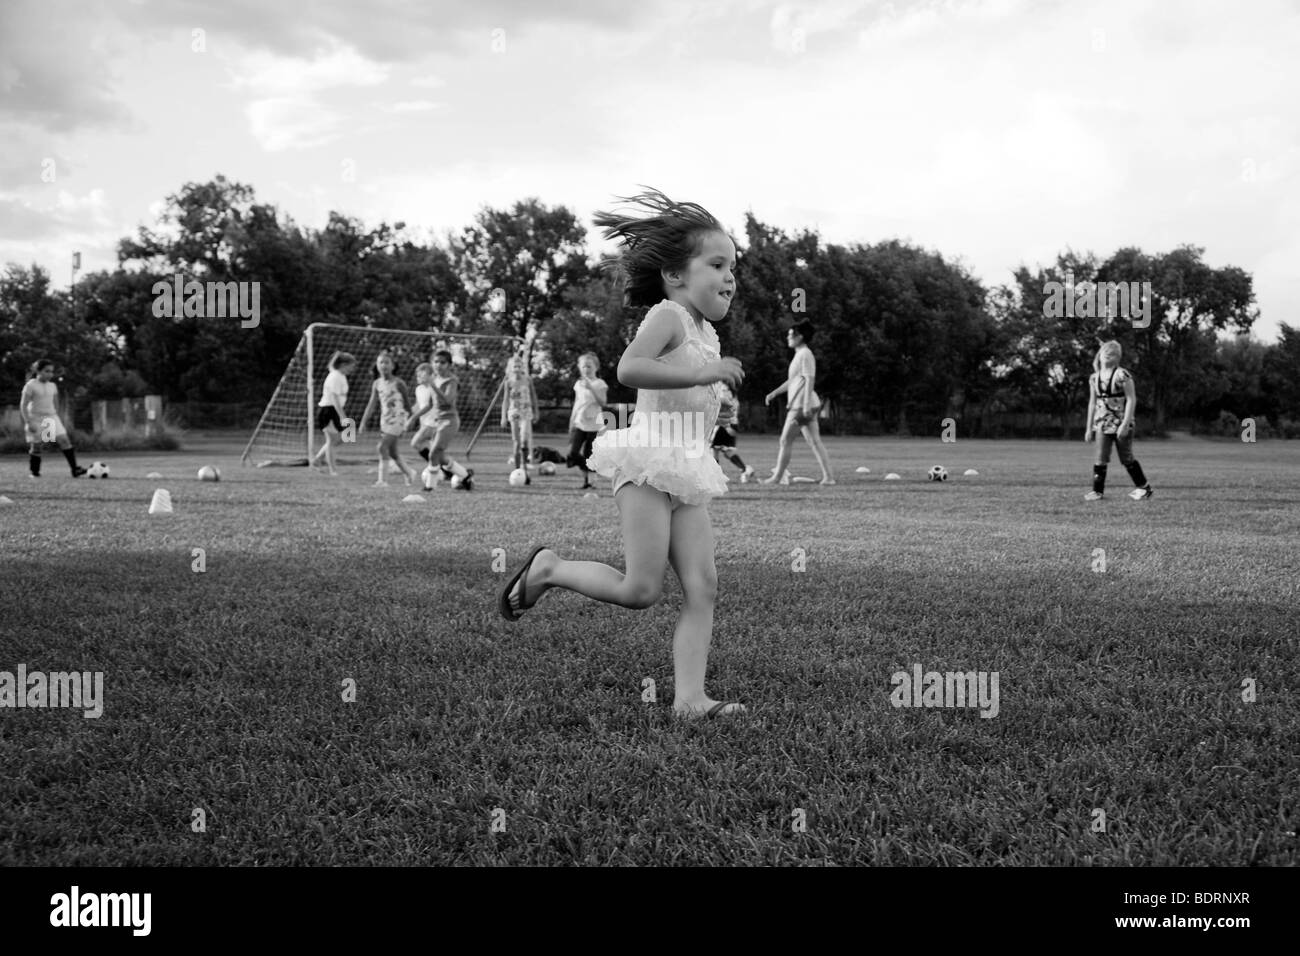 Schwarz / weiß Bild von Mädchen laufen auf Fußballplatz Stockfoto